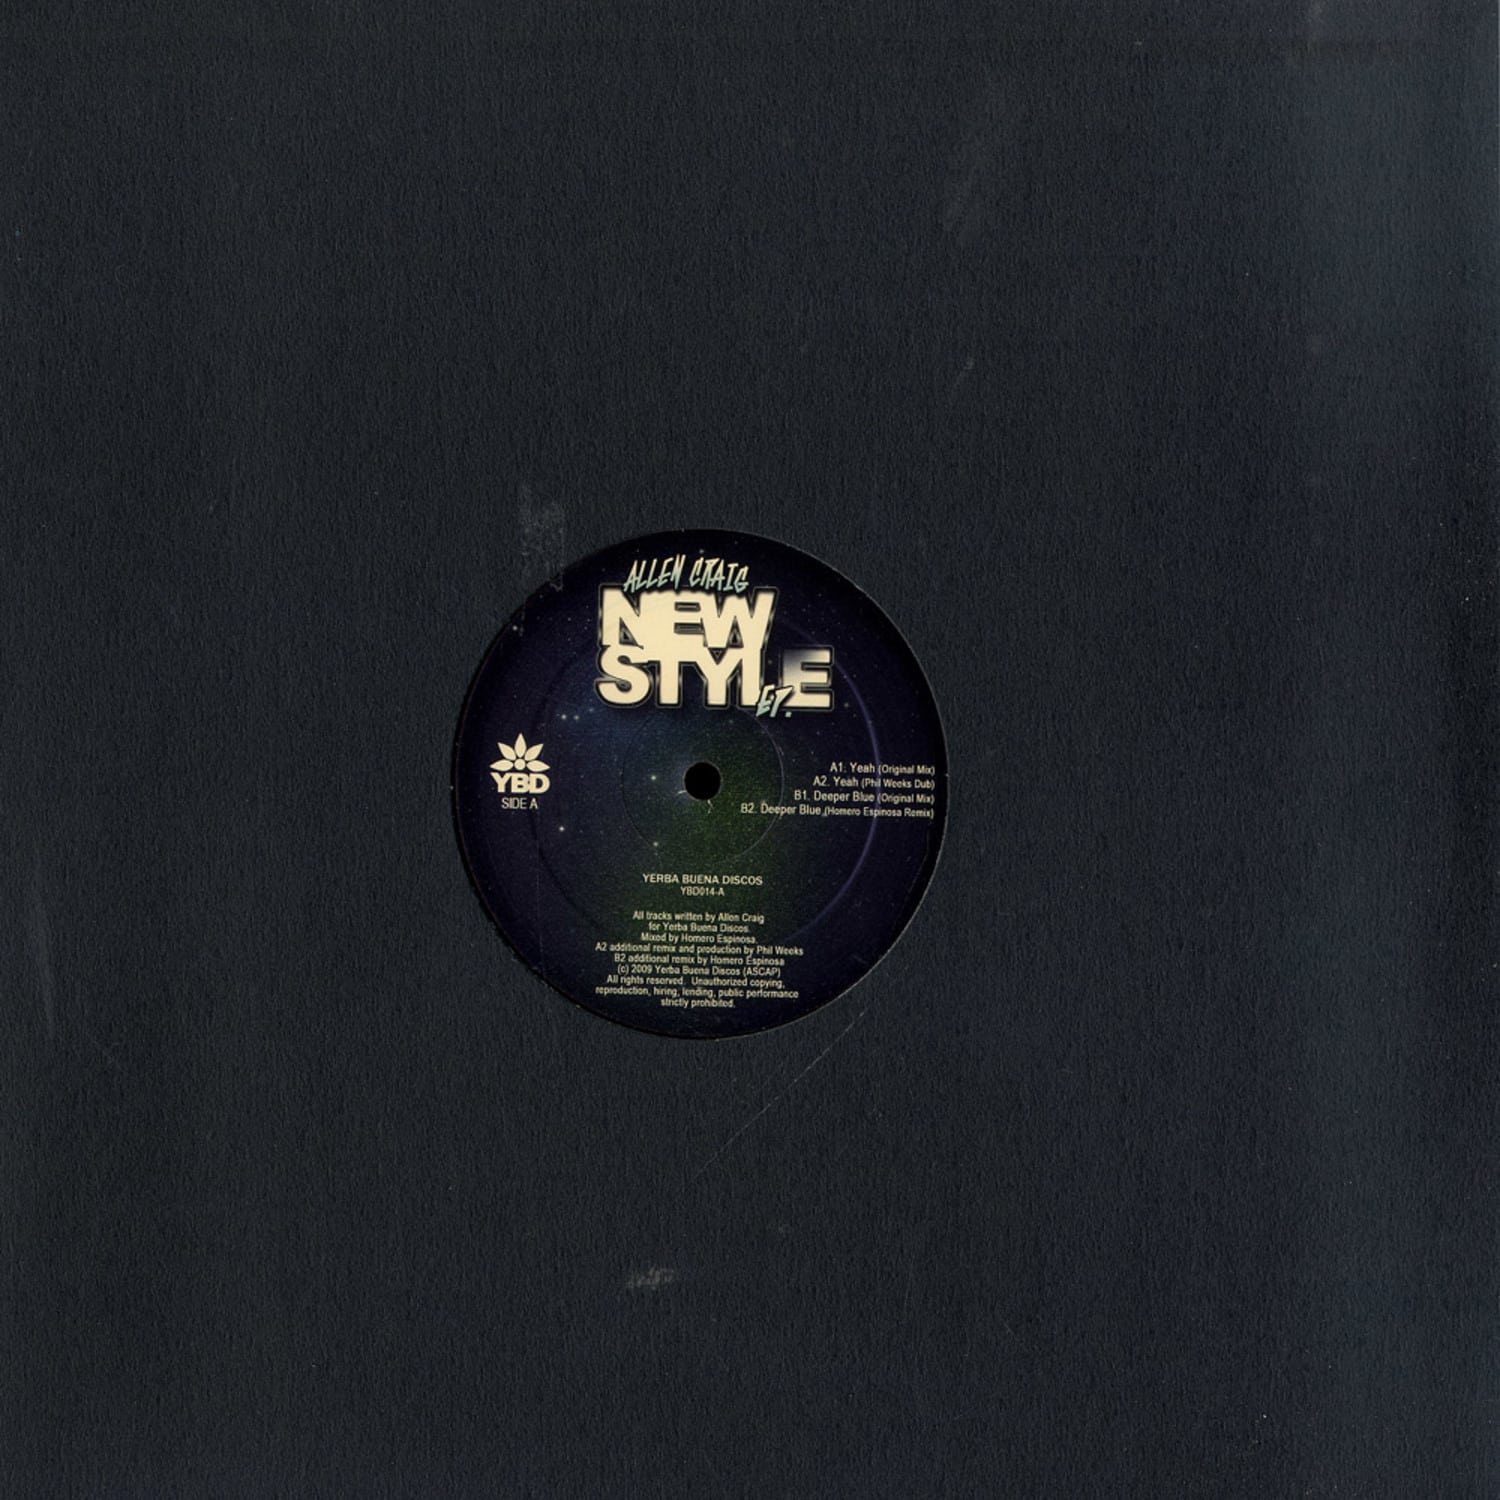 Allen Craig - NEW STYLE EP